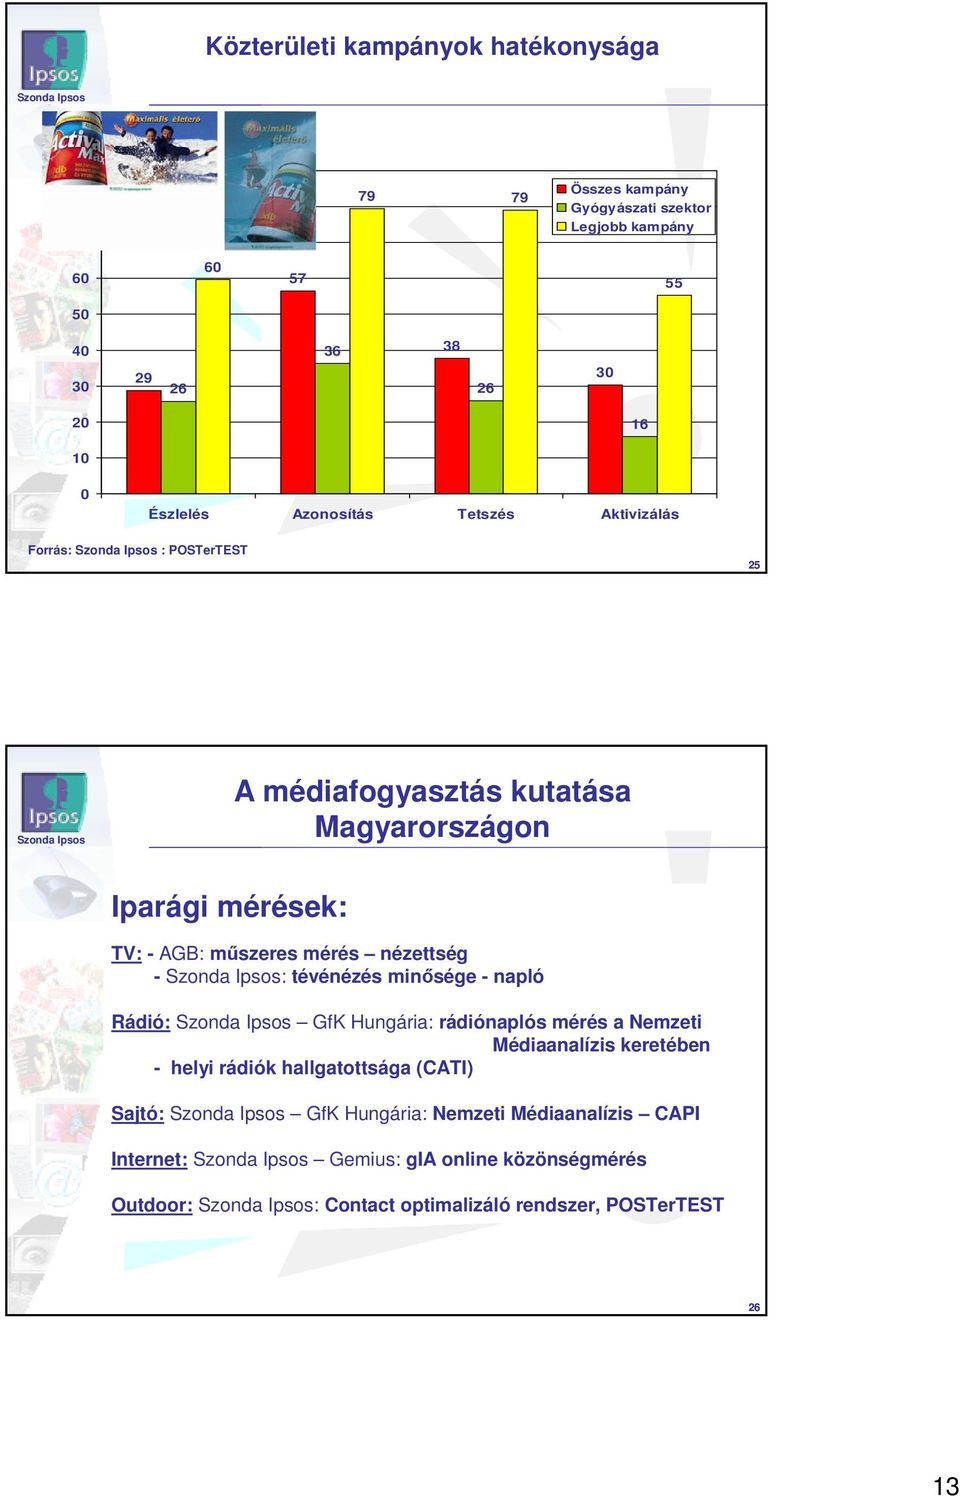 nézettség - : tévénézés minısége - napló Rádió: GfK Hungária: rádiónaplós mérés a Nemzeti Médiaanalízis keretében - helyi rádiók hallgatottsága